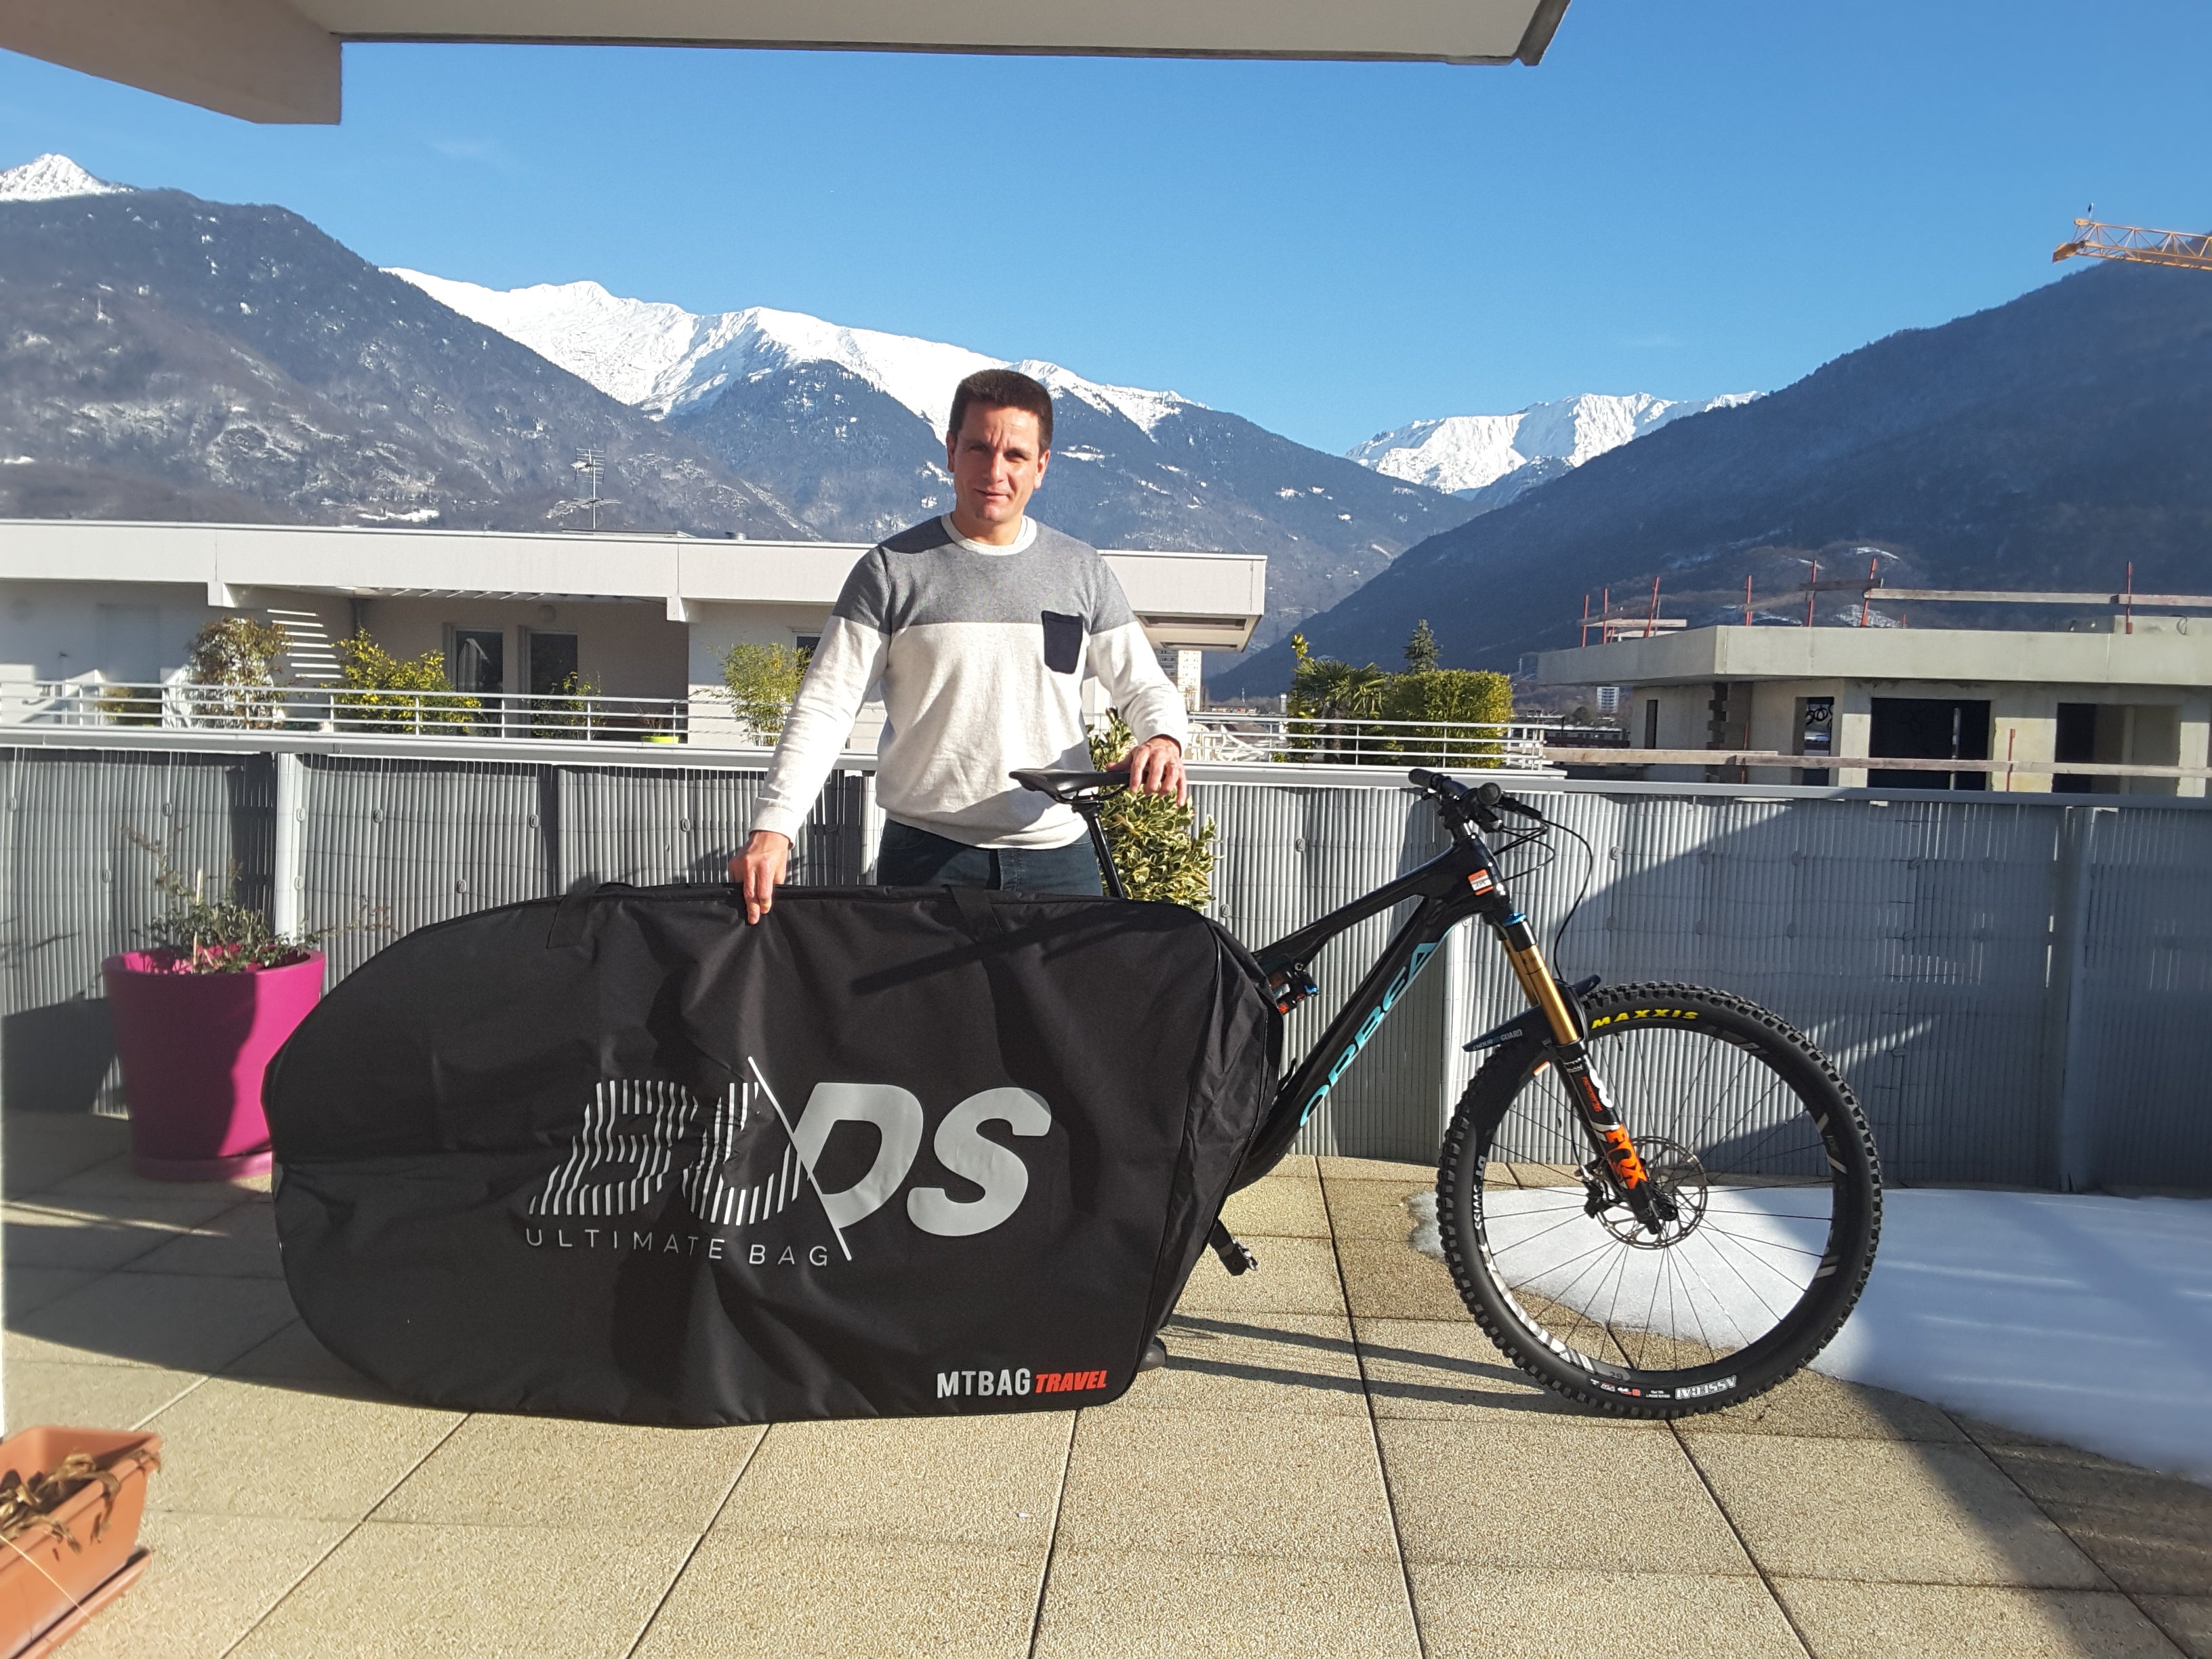 Buds-Sports US - RMTBag Travel Plus | Bolsa de viaje versátil totalmente  acolchada para bicicleta | Ideal para transporte terrestre y aéreo | Todas